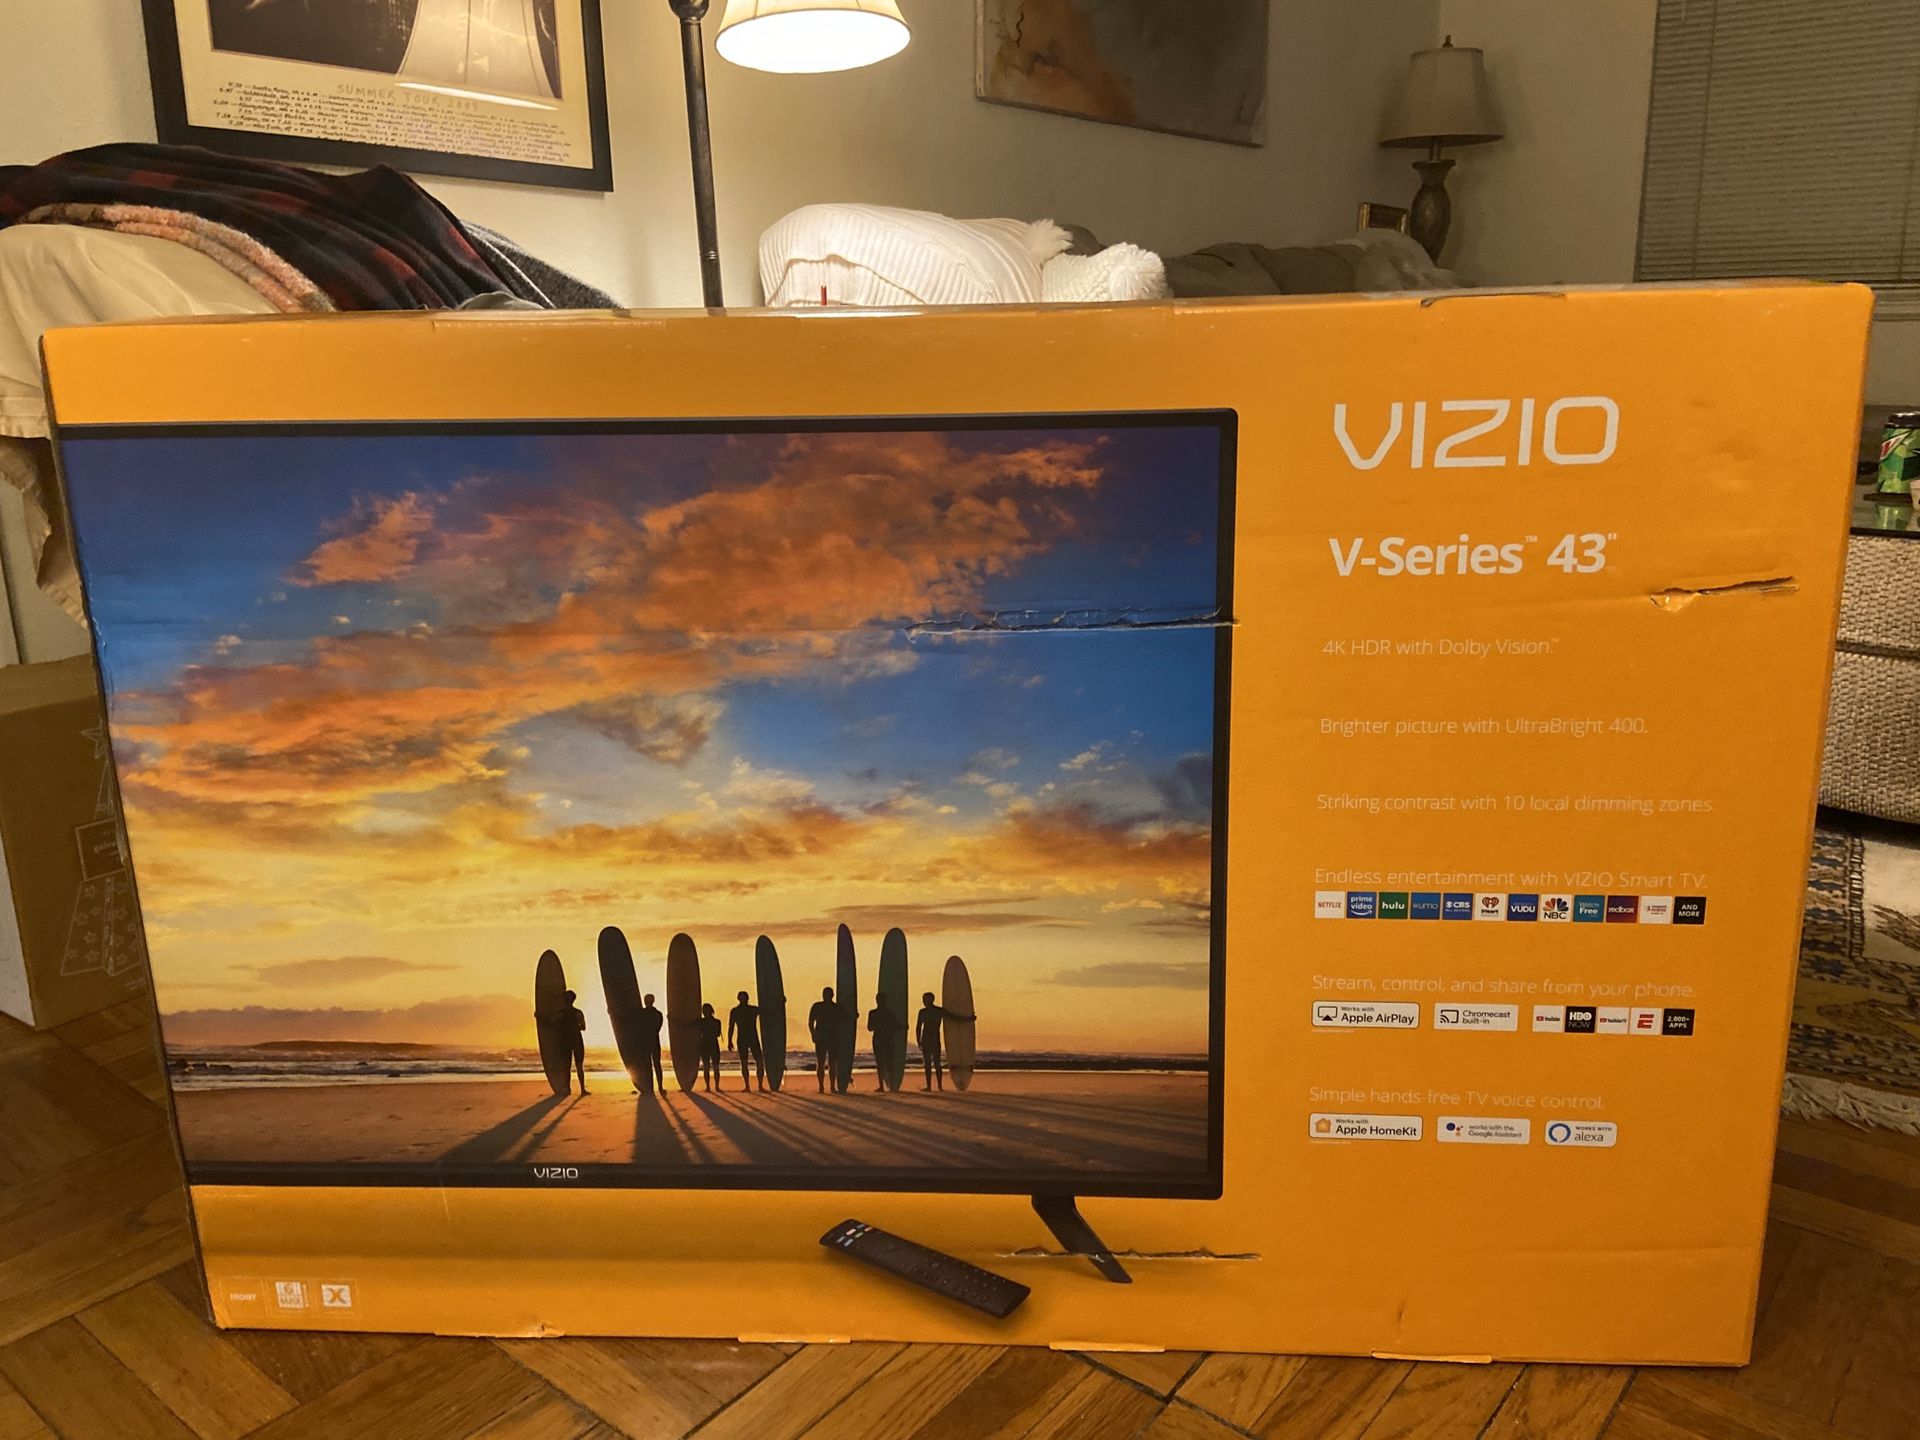 VIZIO 43” 4K HDR Smart TV V-Series *NEW IN BOX*